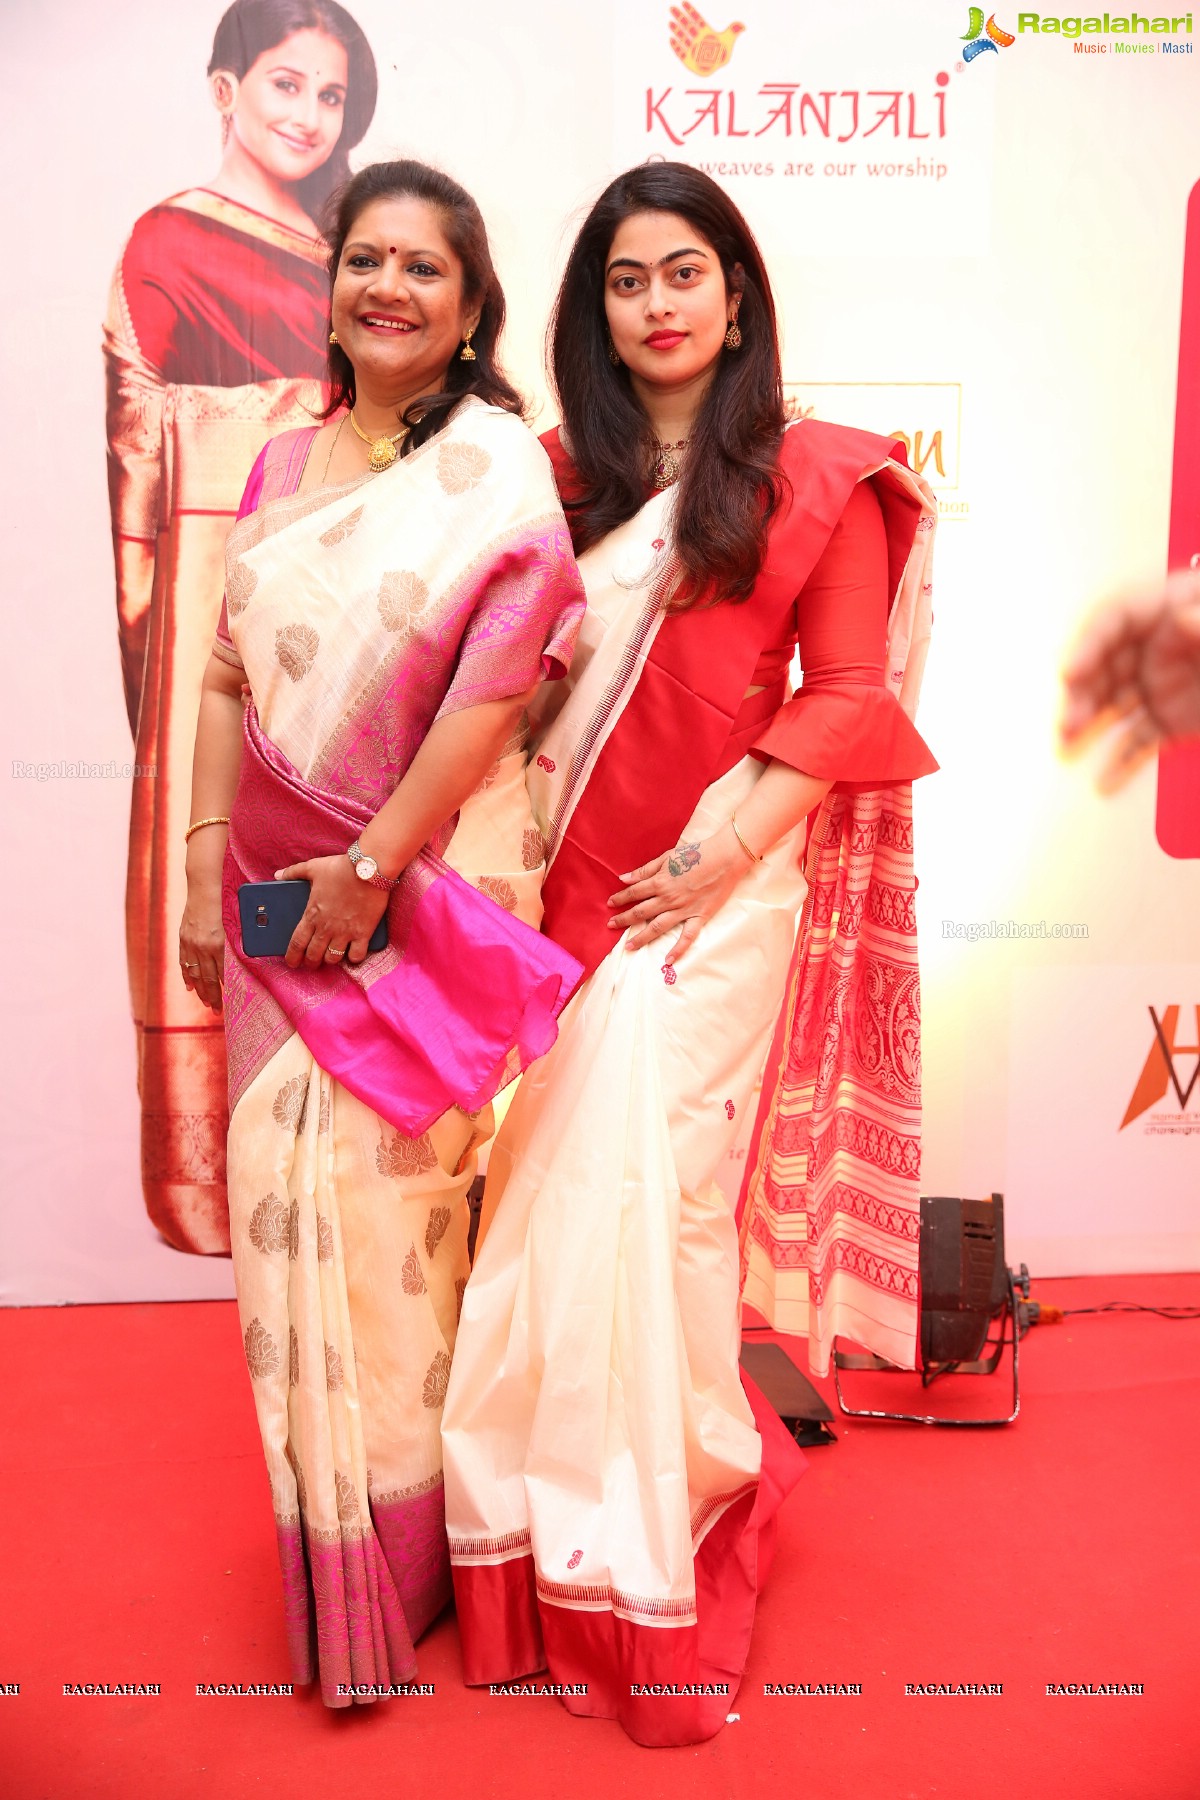 Srimathi Silk Mark 2018 at Kalinga Cultural Center